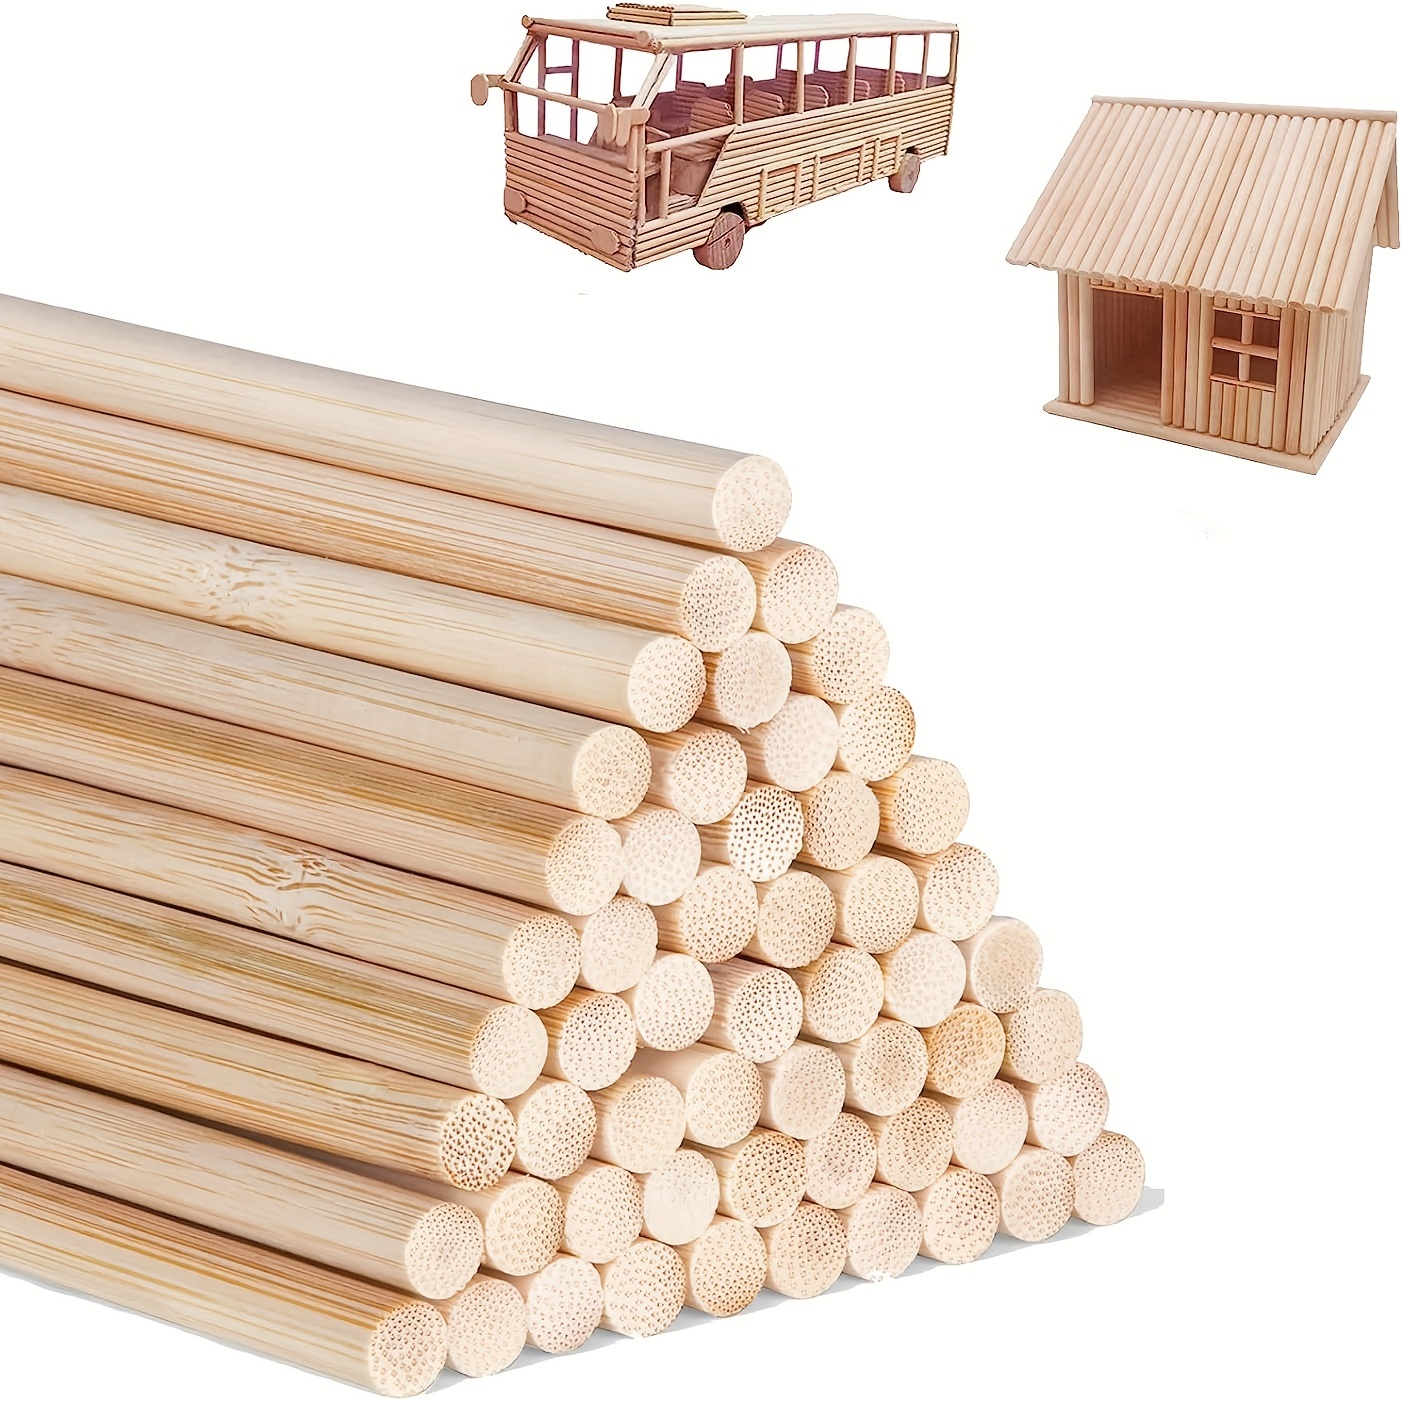  HJZALMI Tacos de madera cuadrados, tiras de madera sin  terminar, tiras de madera para manualidades, proyectos de bricolaje,  modelos, suministros de fabricación de soporte, personalización (color :  0.8 x 2.0 in